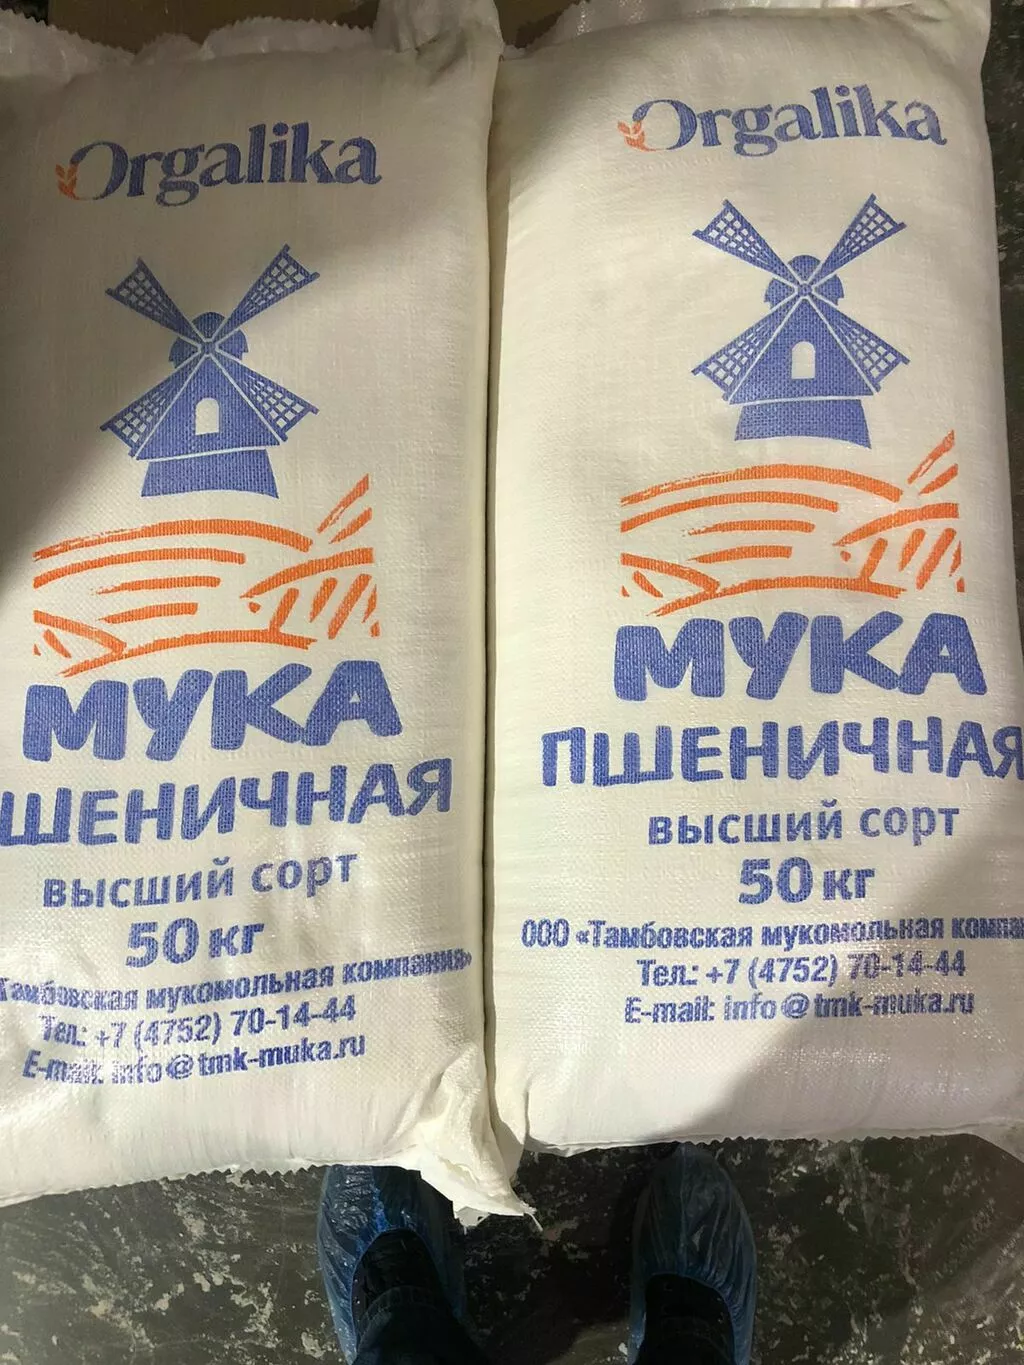 пука пшеничная в/с оргалика (orgalika) в Тамбове и Тамбовской области 8